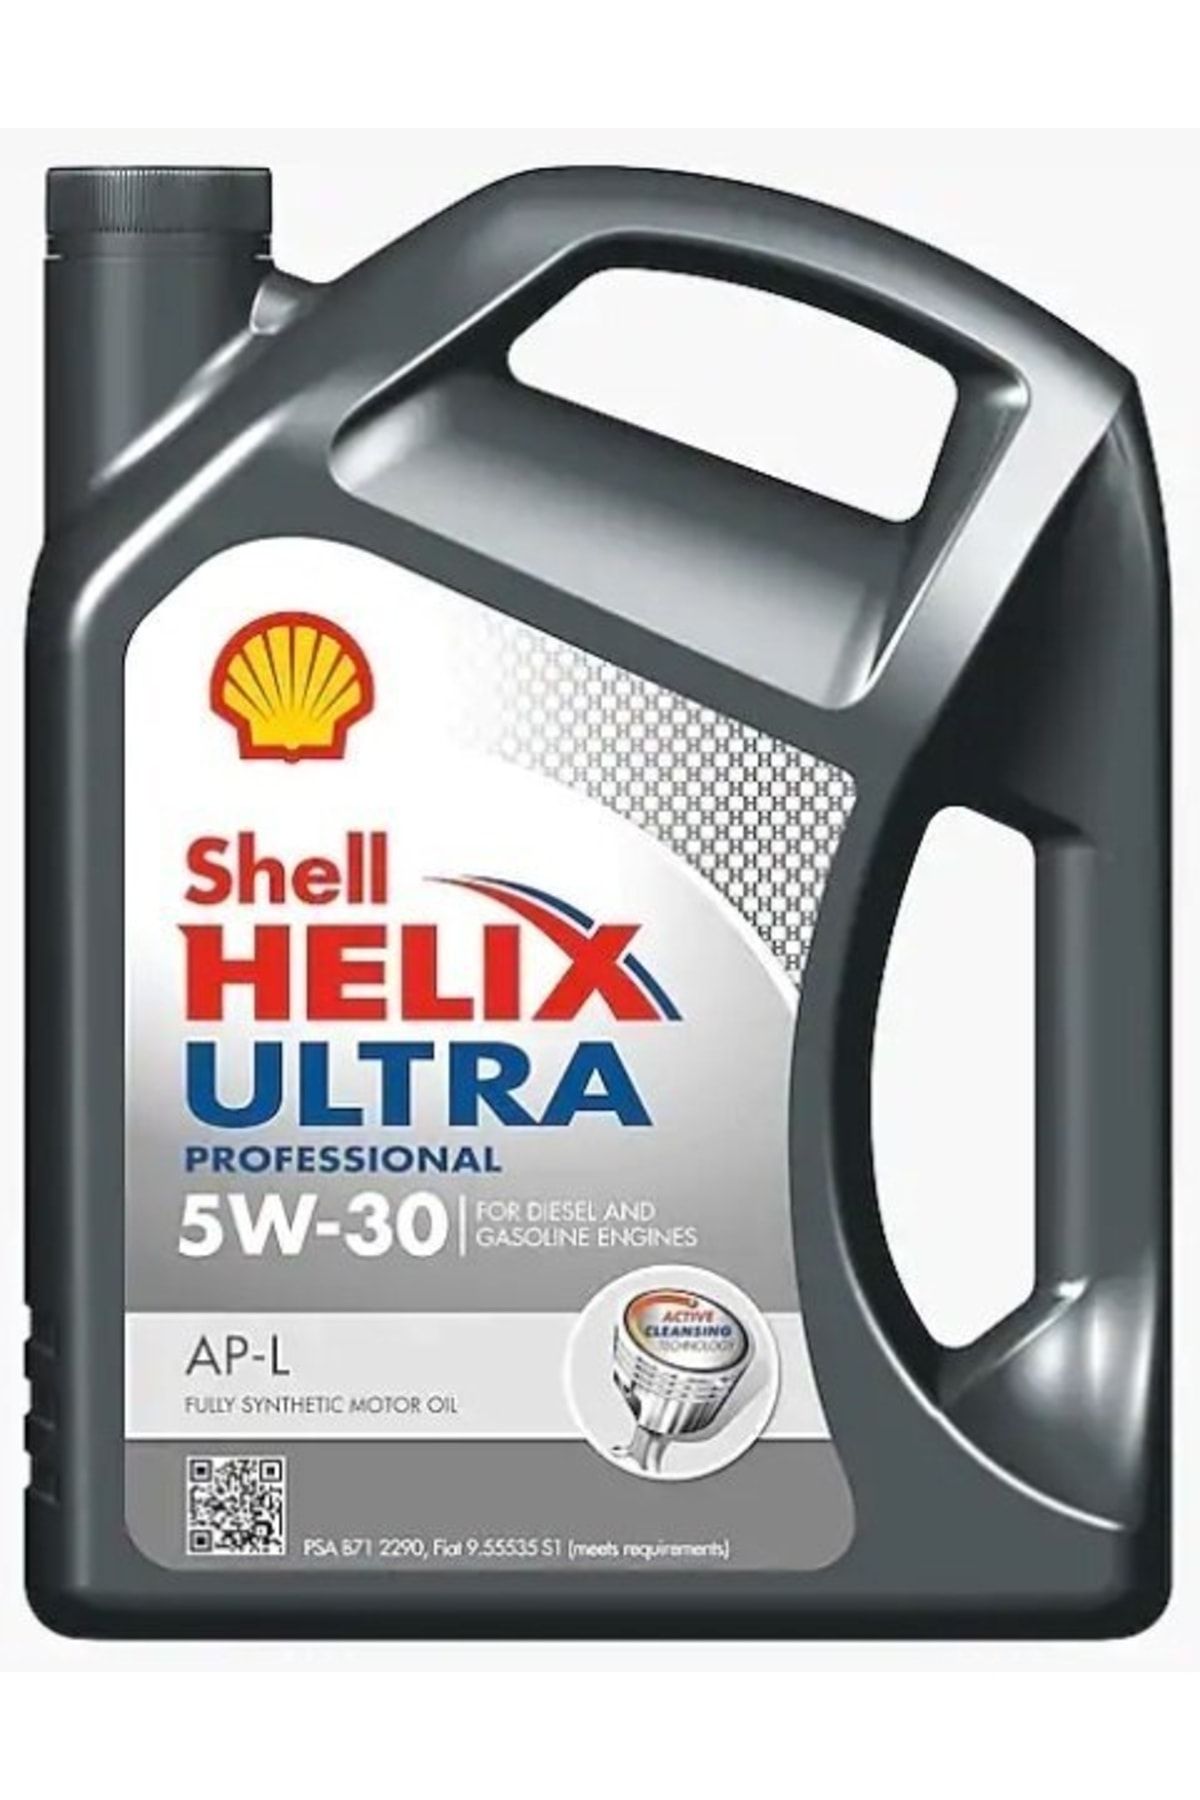 Shell Helix Ultra Pro Ap-l 5w-30  5l